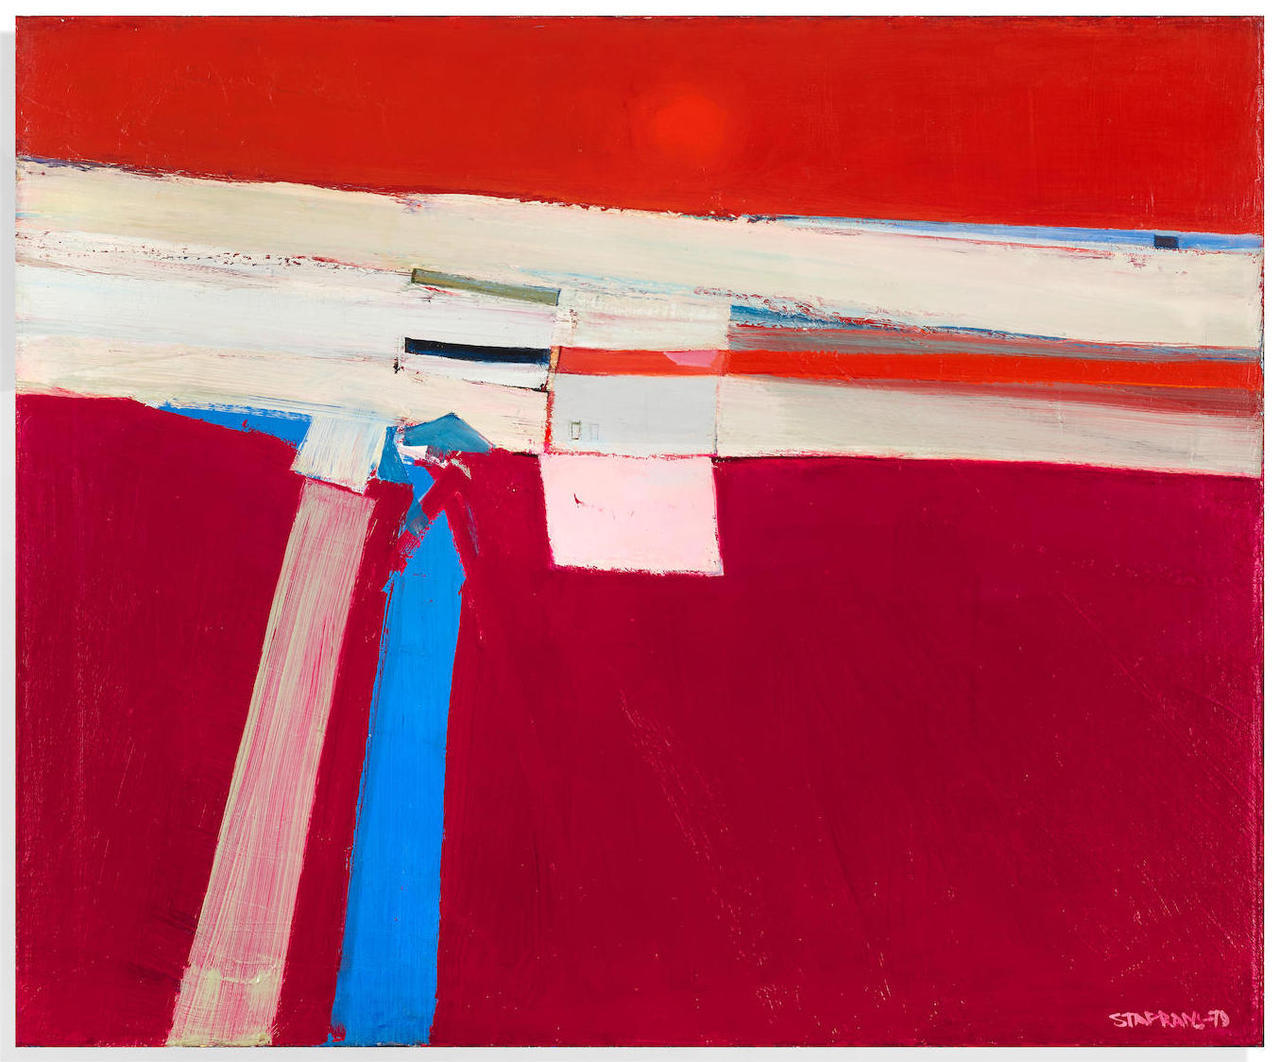 thunderstruck9:Raimonds Staprans (Latvian/American, b. 1926), Untitled, 1979. Oil